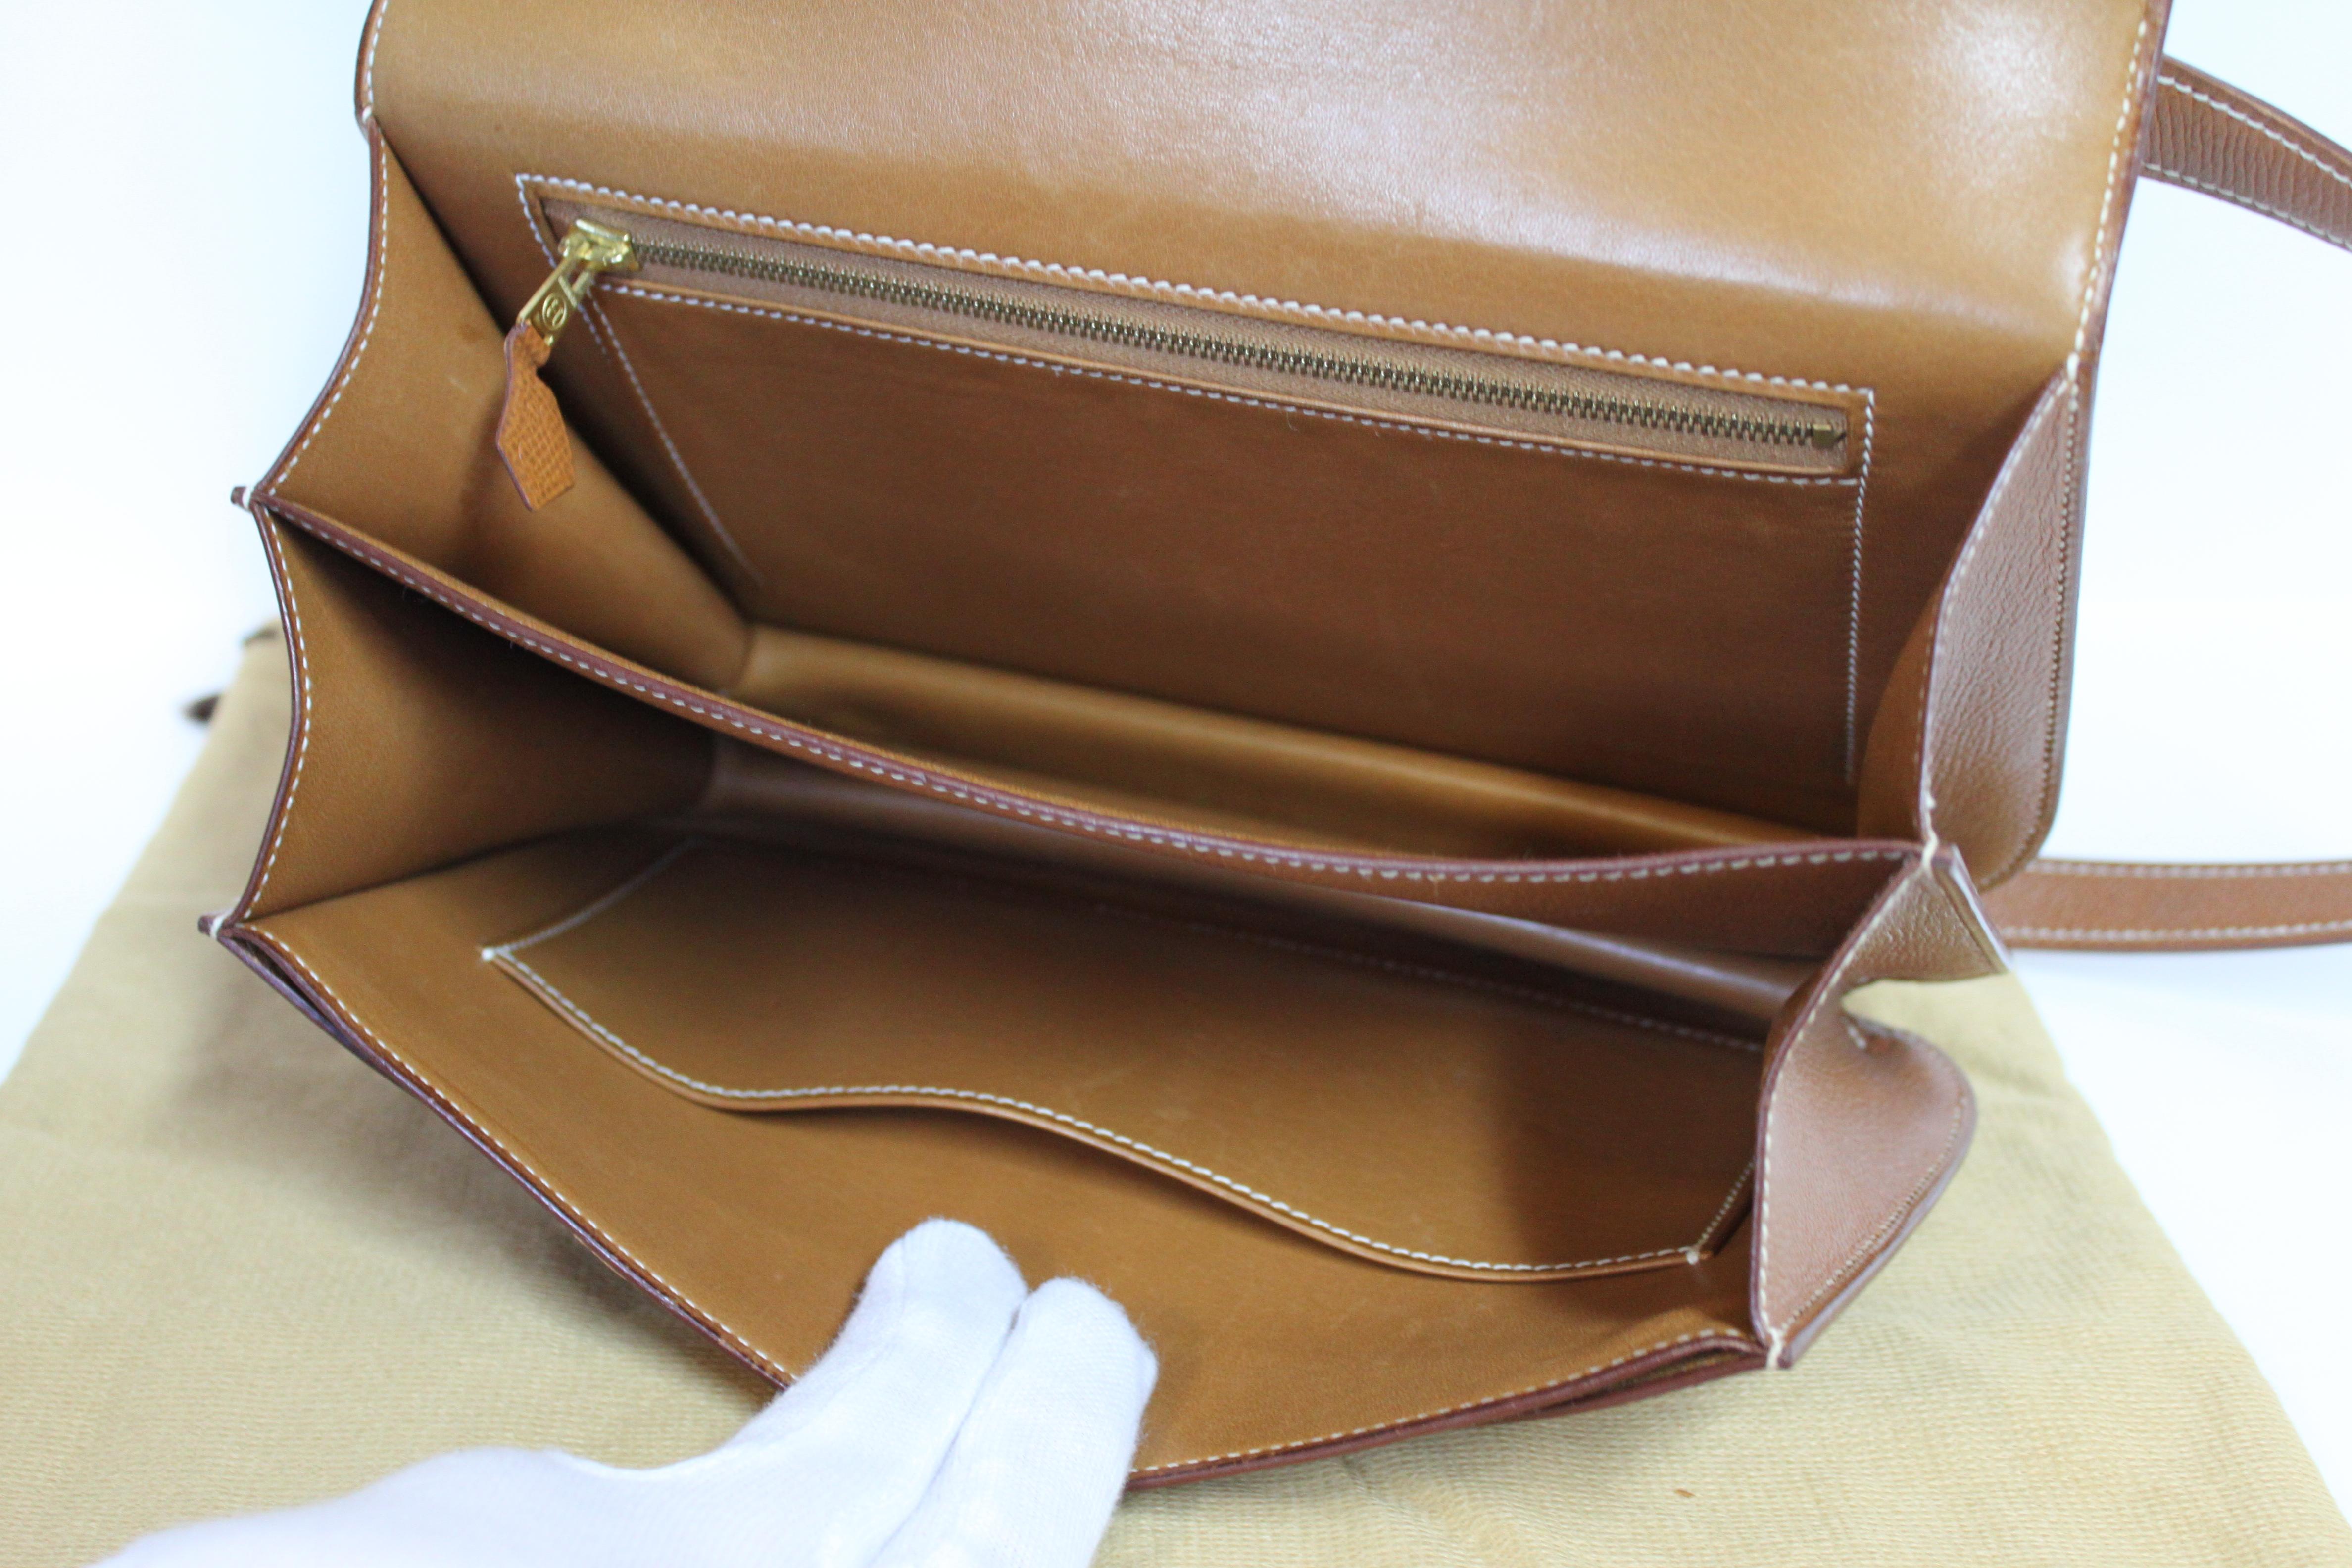 Hermes Constance 24 Shoulder Bag brown/tan epsom leather with gold Hardware For Sale 9